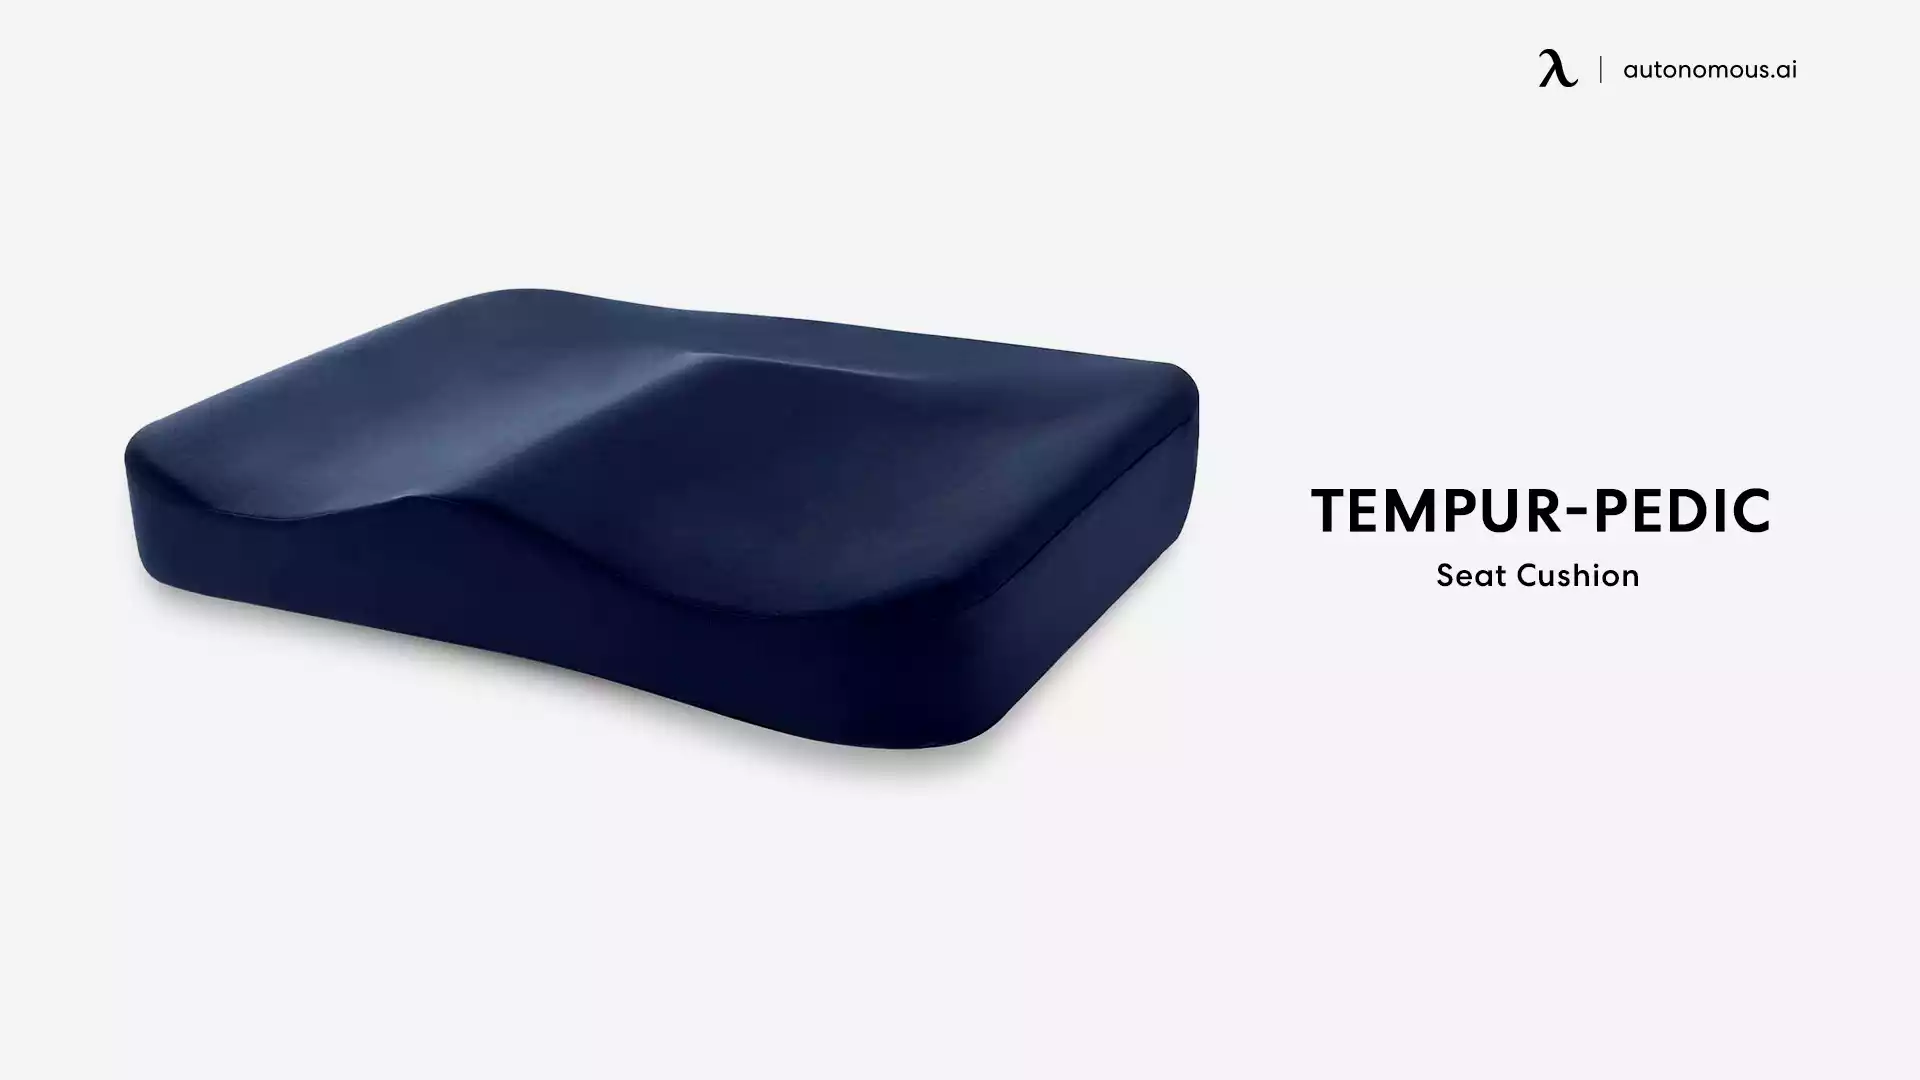 TEMPUR-PEDIC desk chair cushion